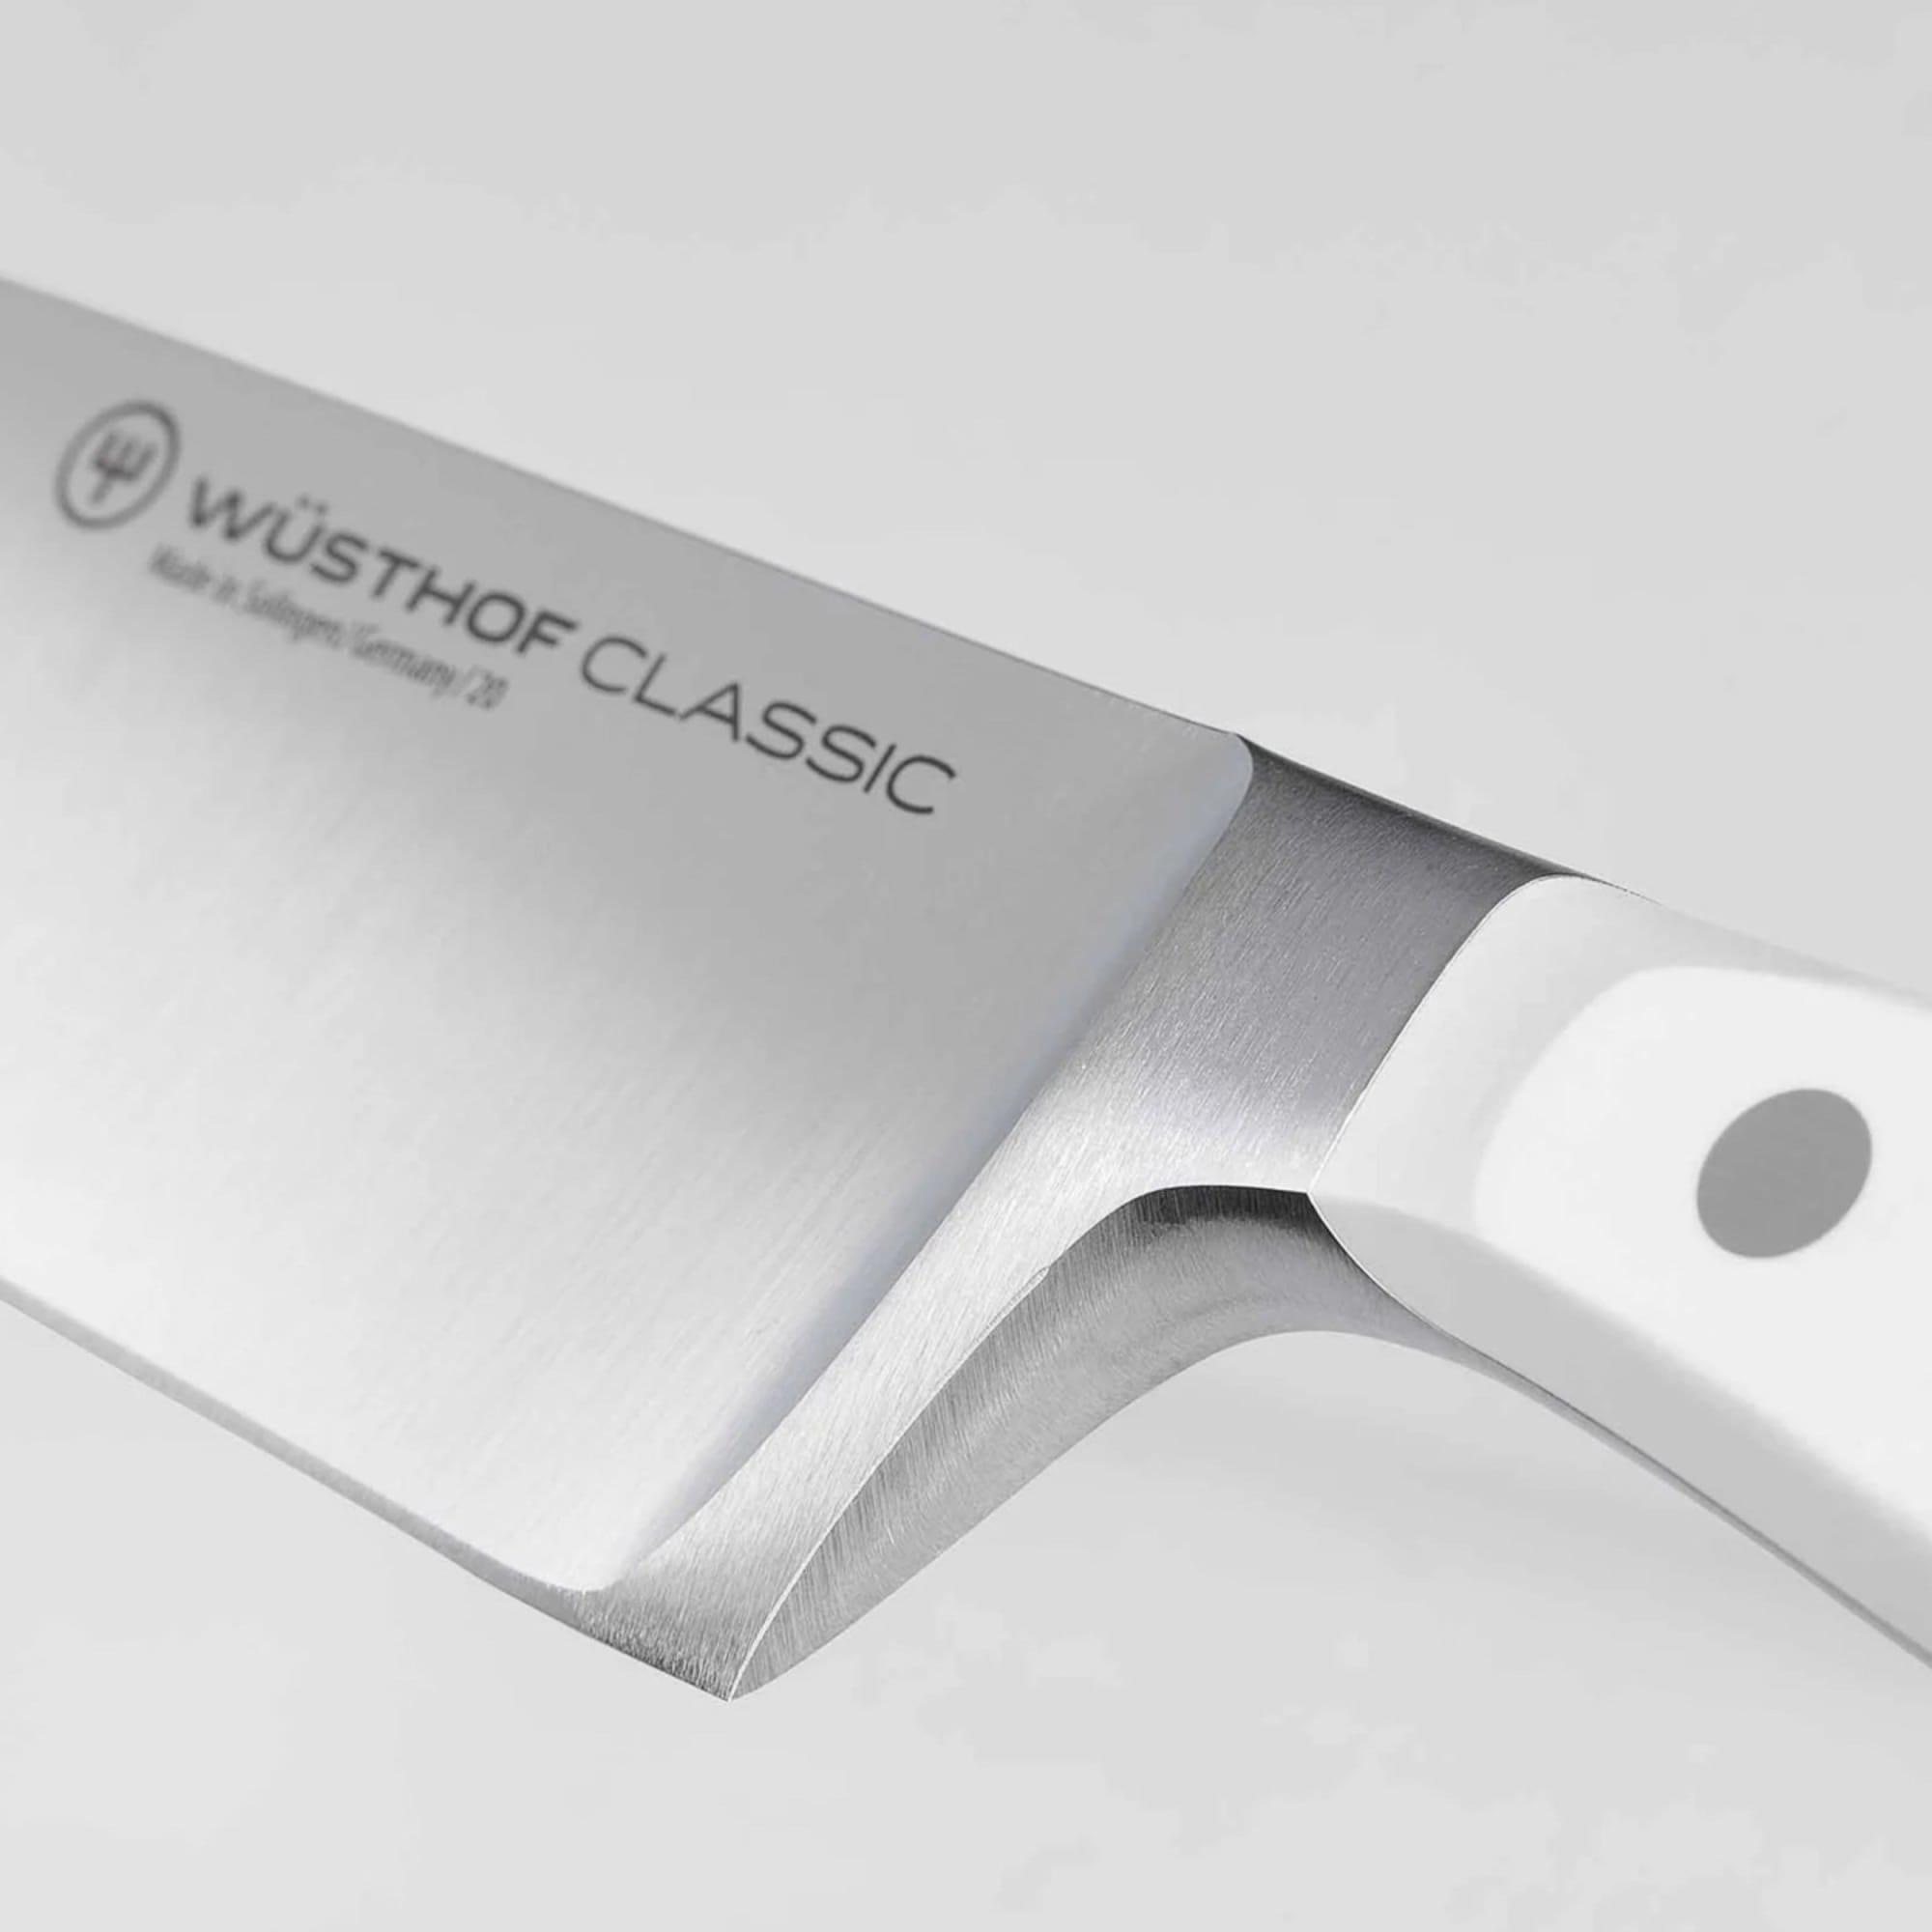 Wusthof Classic White 7pc Slim Knife Block Set with Santoku Knife Image 5